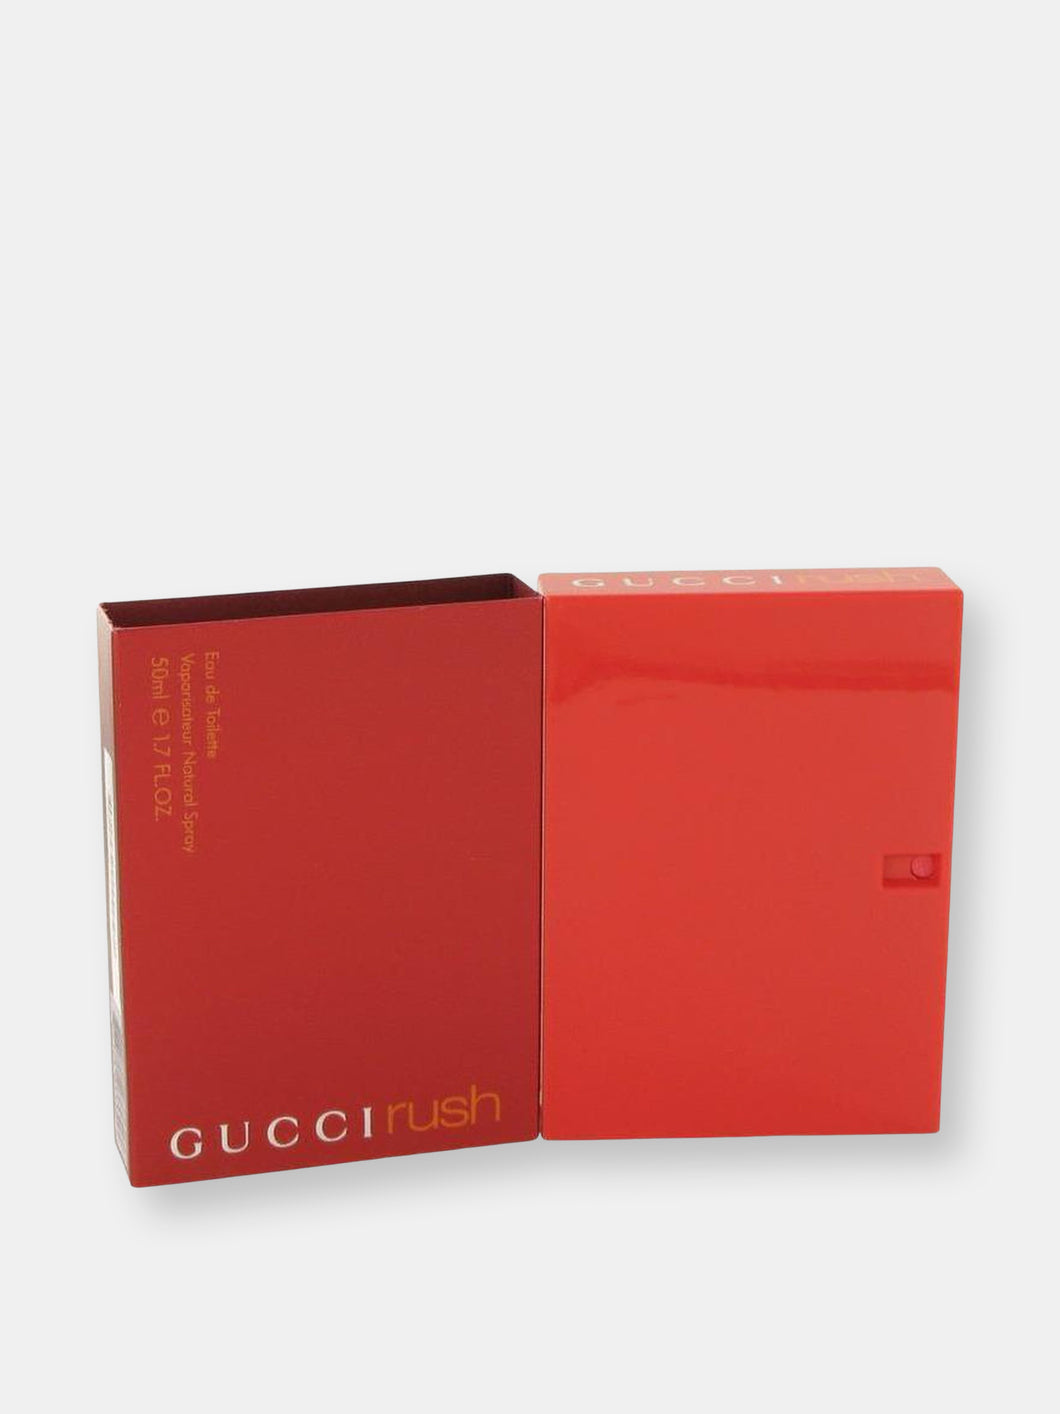 Gucci Rush by Gucci Eau De Toilette Spray 1.7 oz